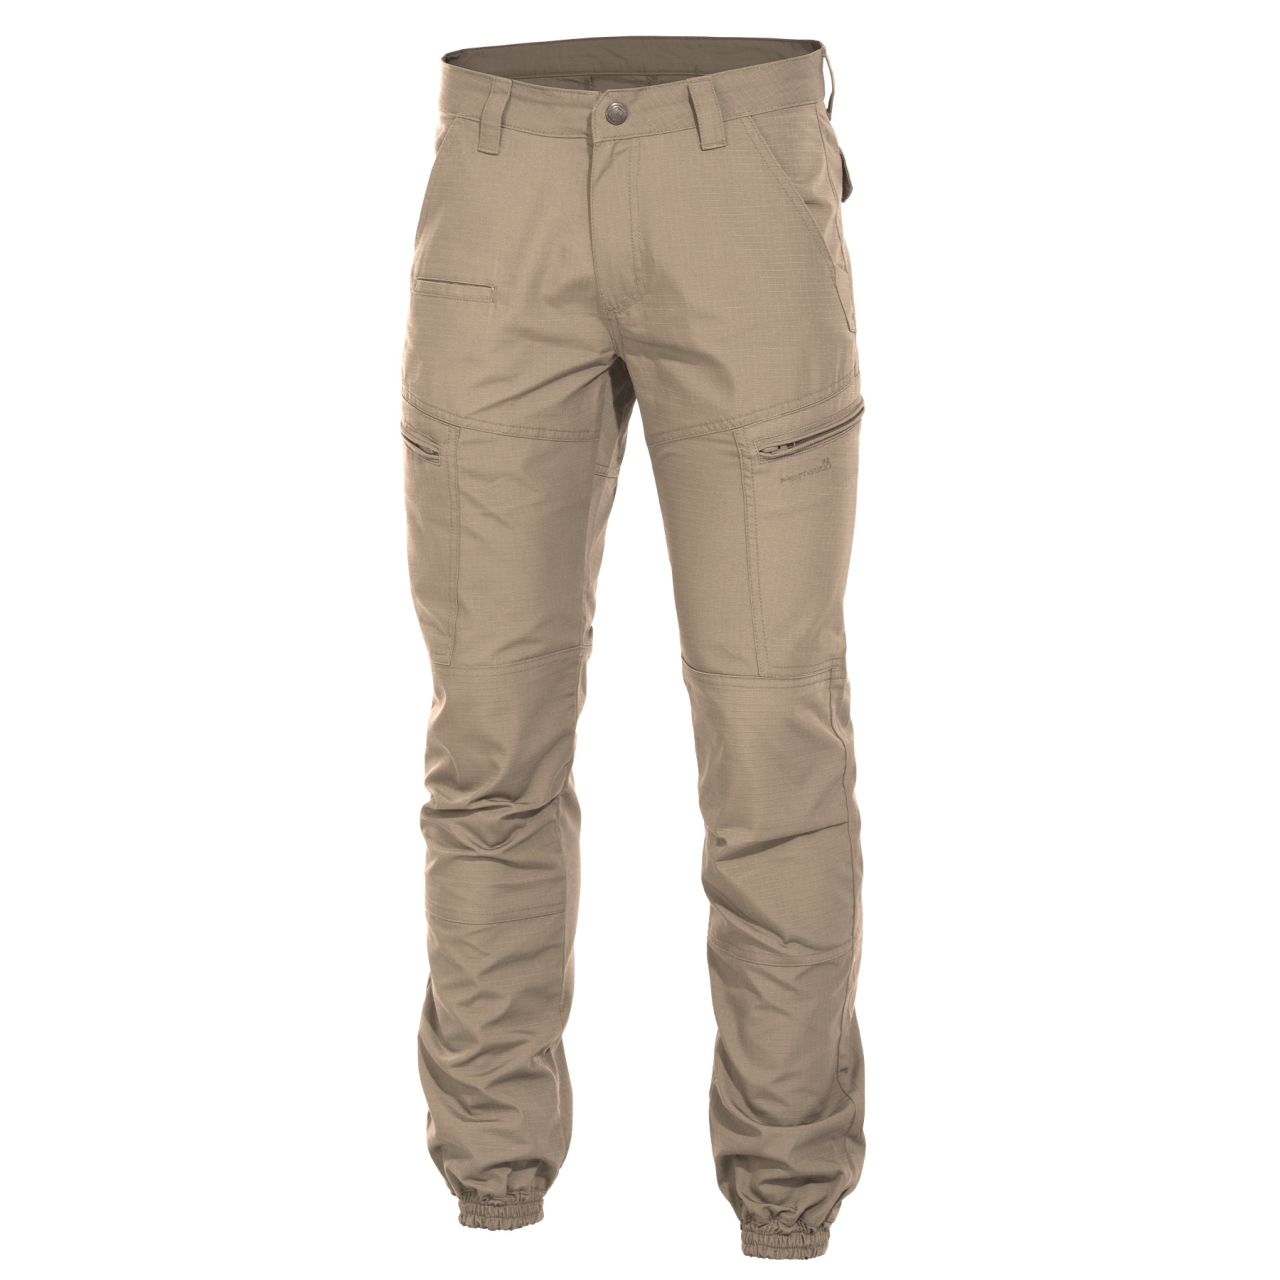 Kalhoty Pentagon Ypero - béžové, 44 XL